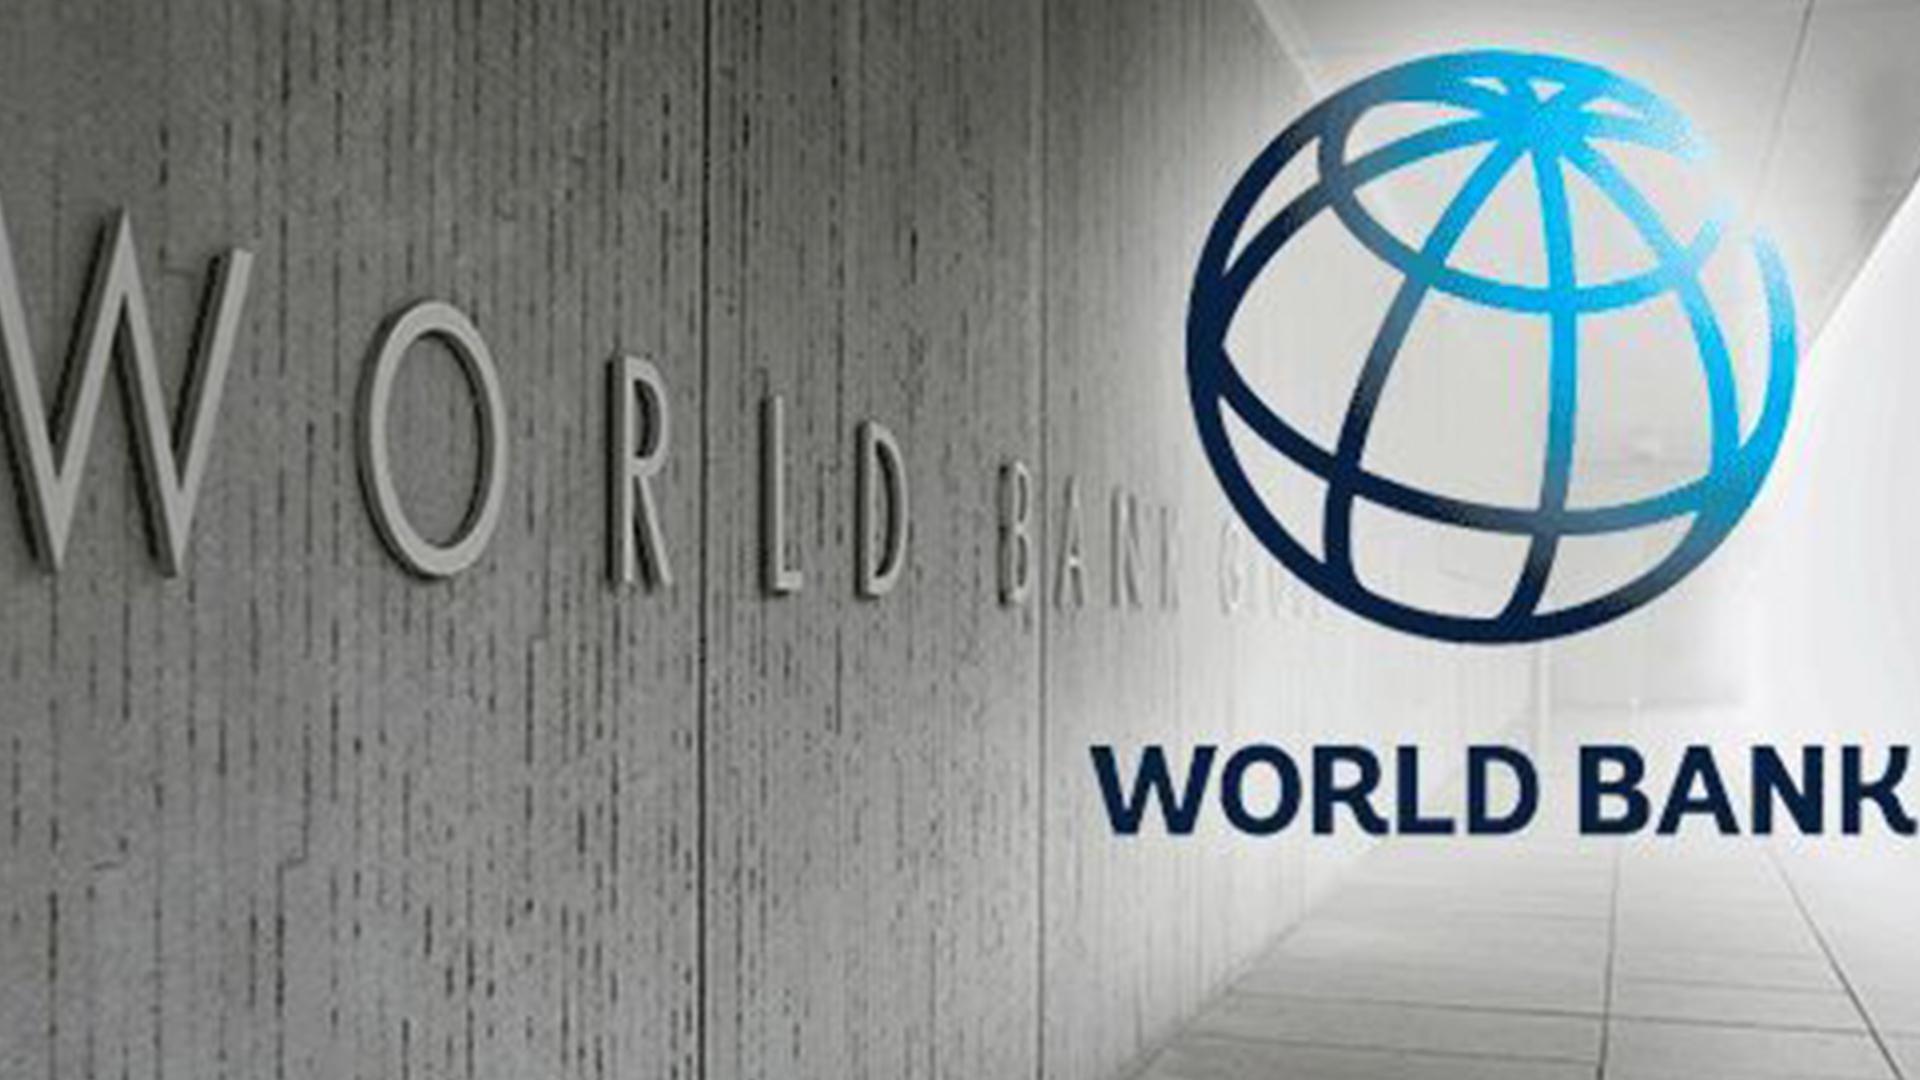 World bank is. Всемирный банк. Логотип Всемирного банка. Мировой Центральный банк. Всемирный банк ООН.